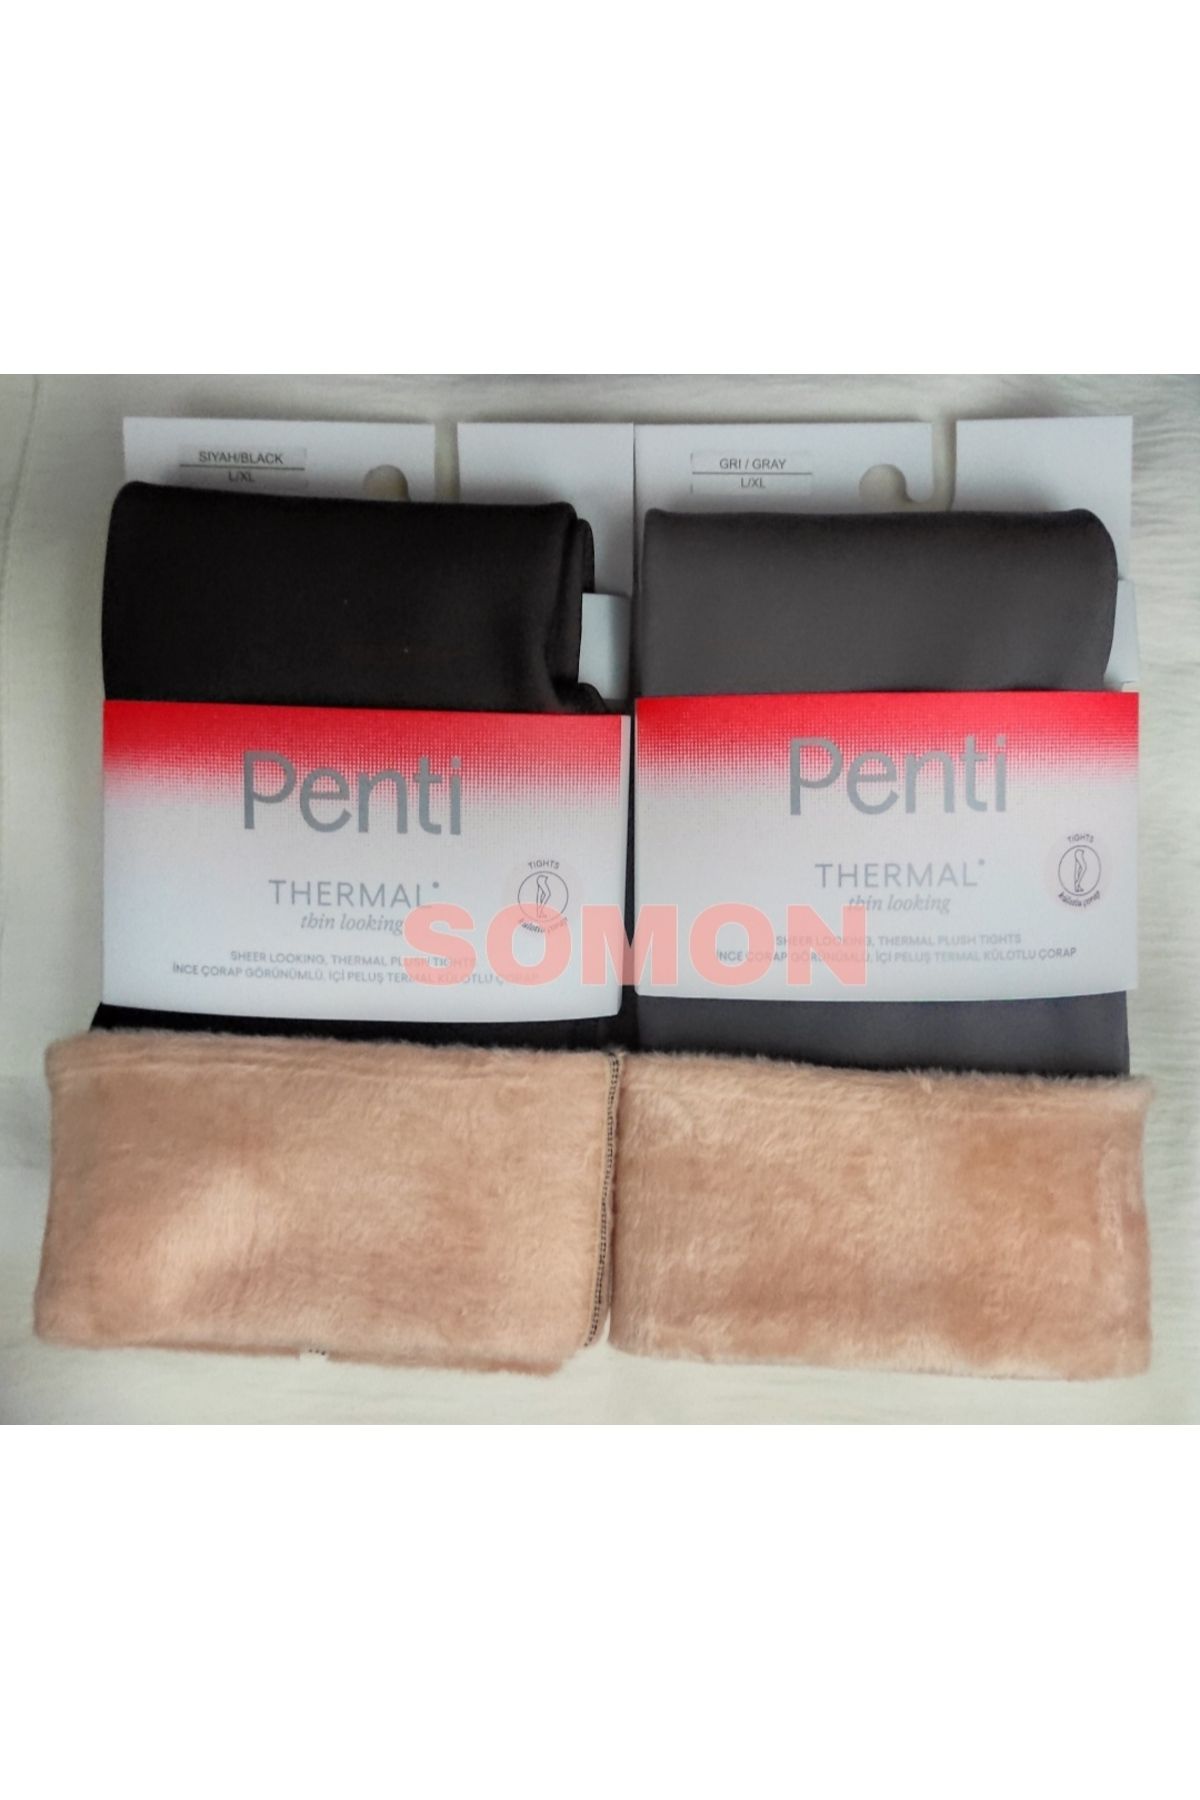 Penti Kadın Thinlooking Thermal (İNCE GÖRÜNEN TERMAL) Külotlu Çorap 2'Lİ